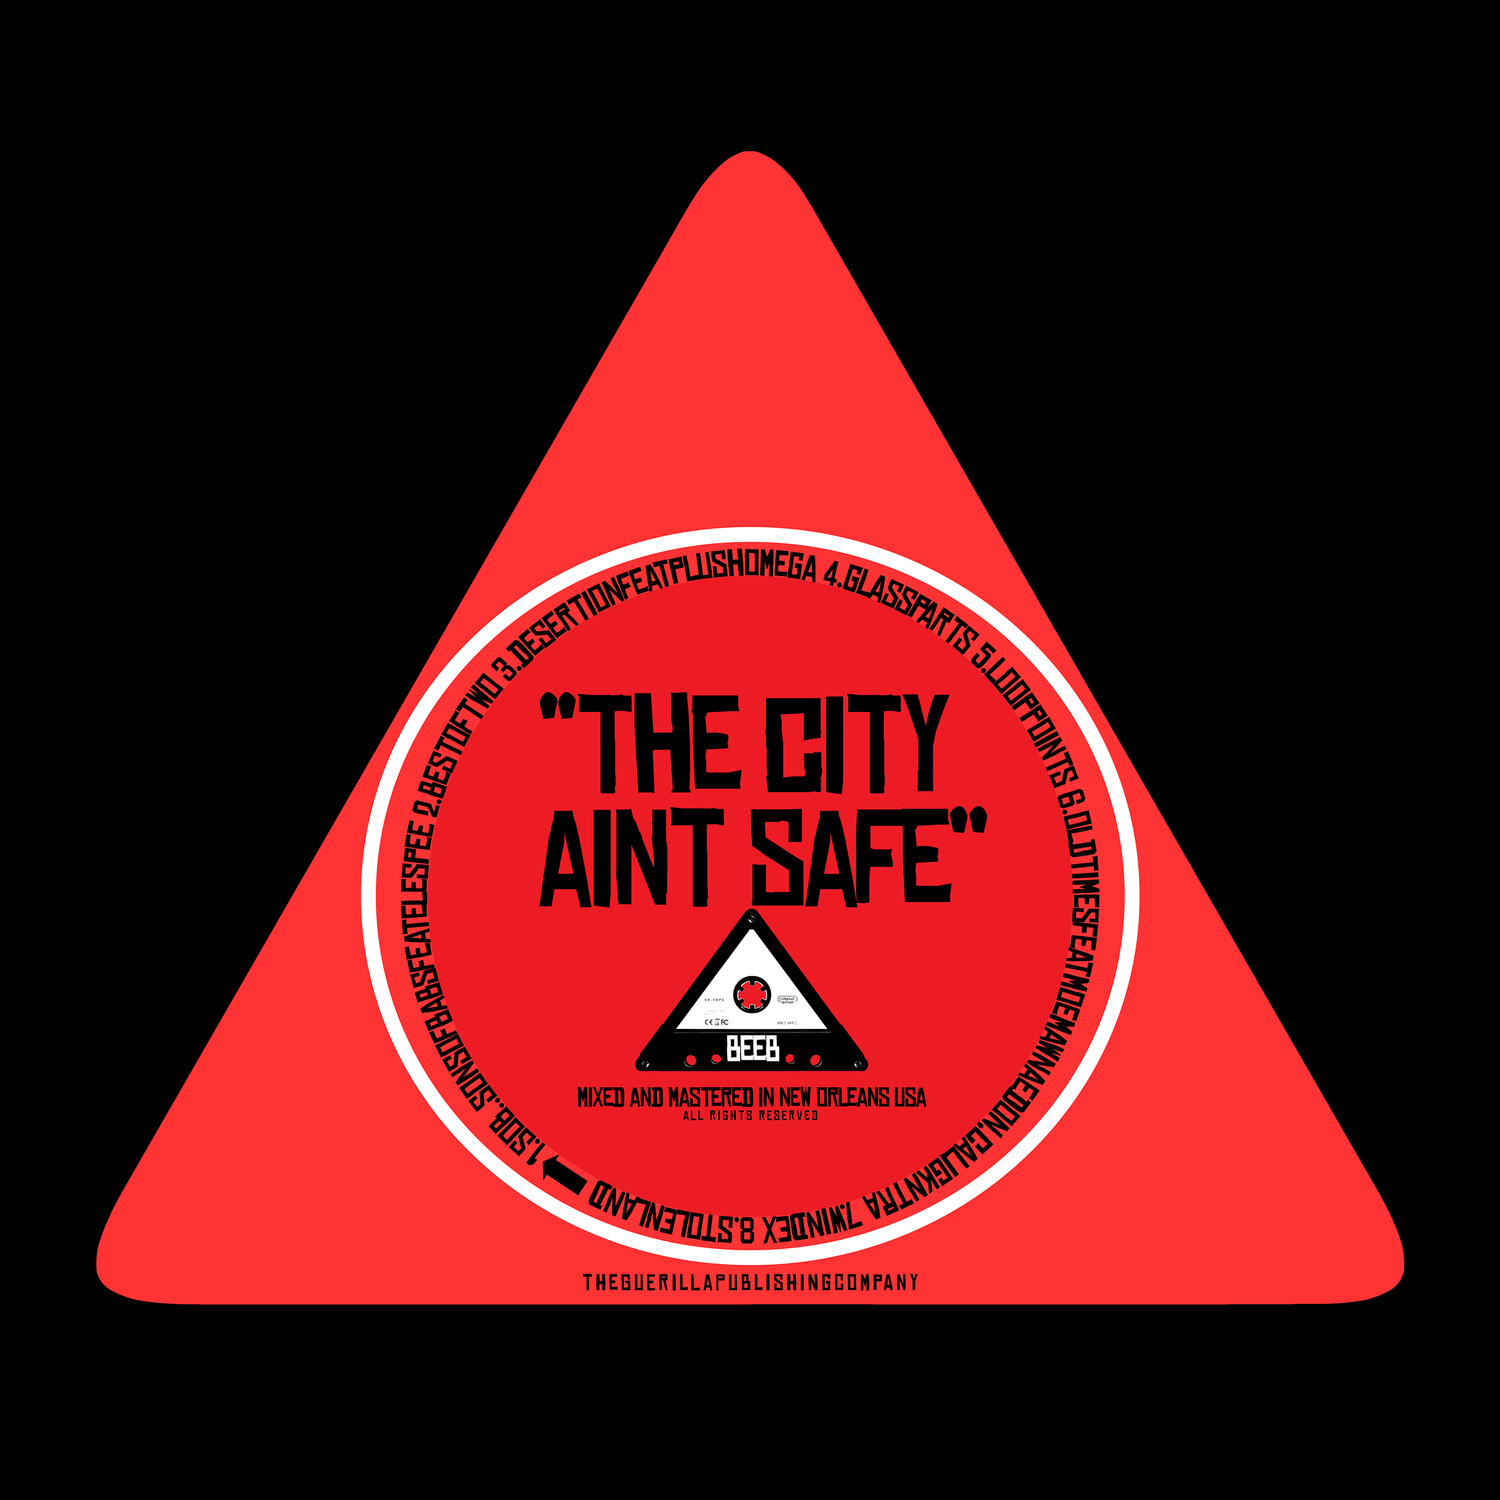 "THE CITY AINT SAFE" ALBUM